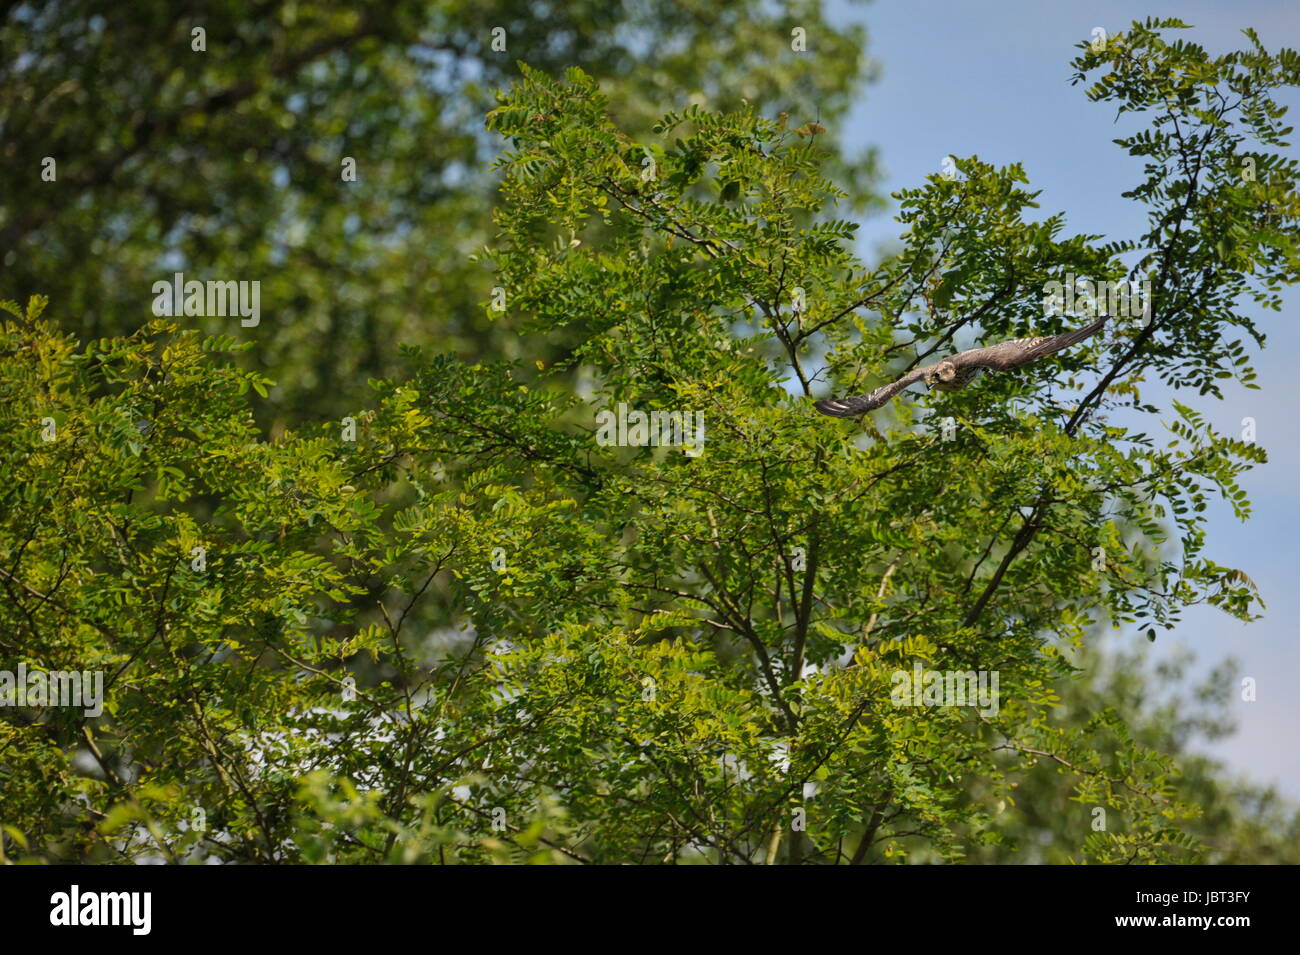 Peregrine falcon (Falco peregrinus) in fly Stock Photo